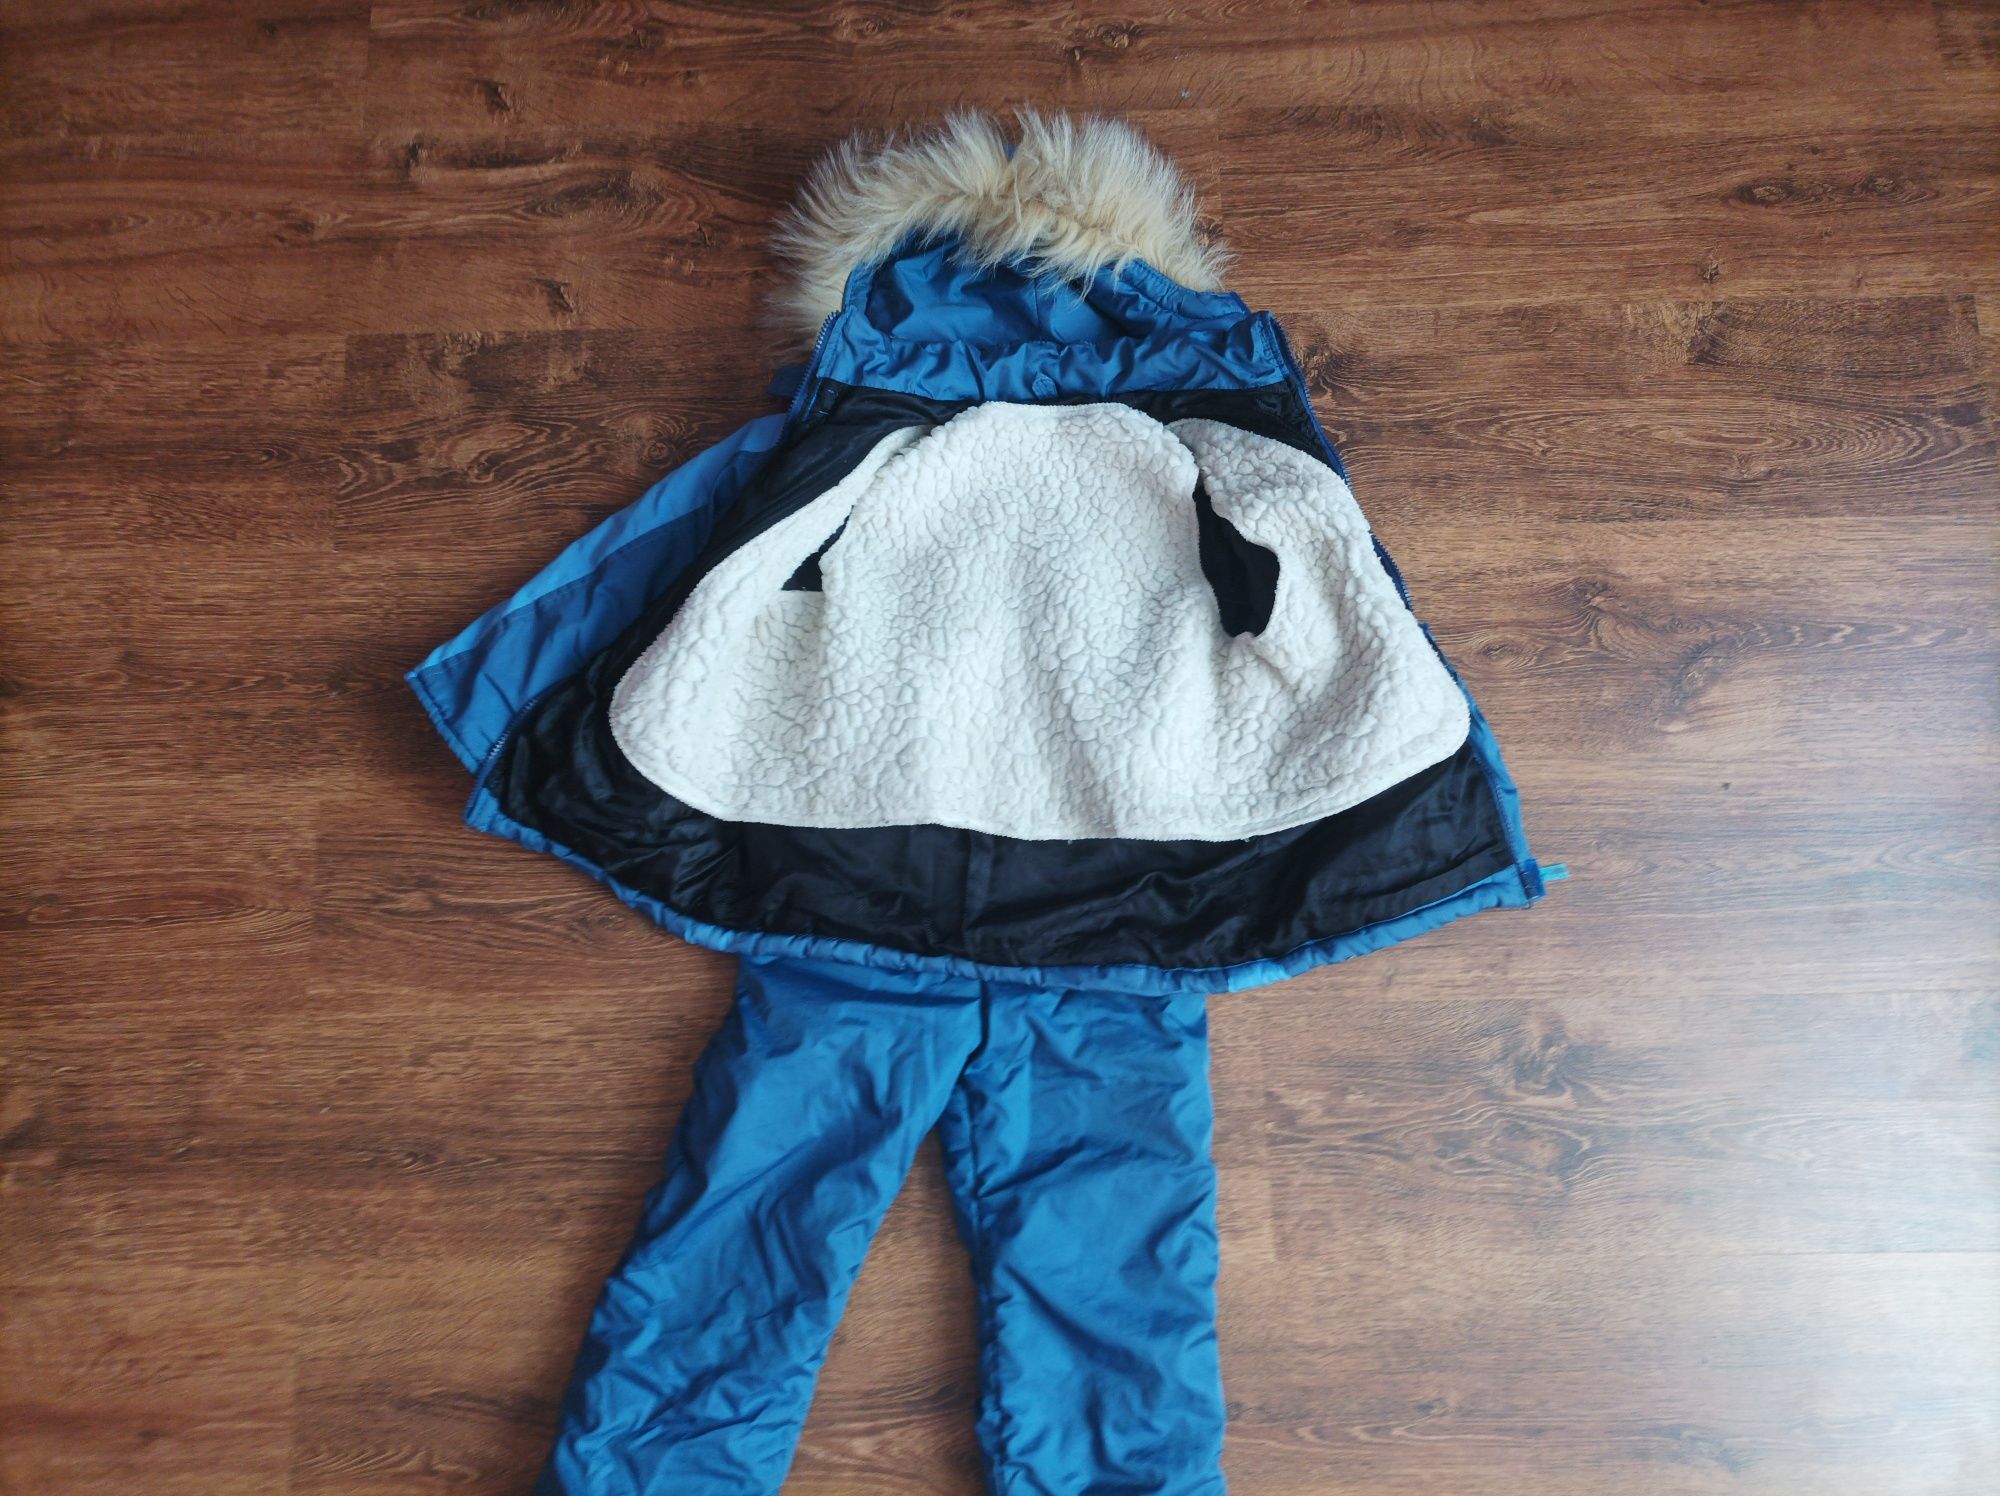 Дитячий зимовий костюм